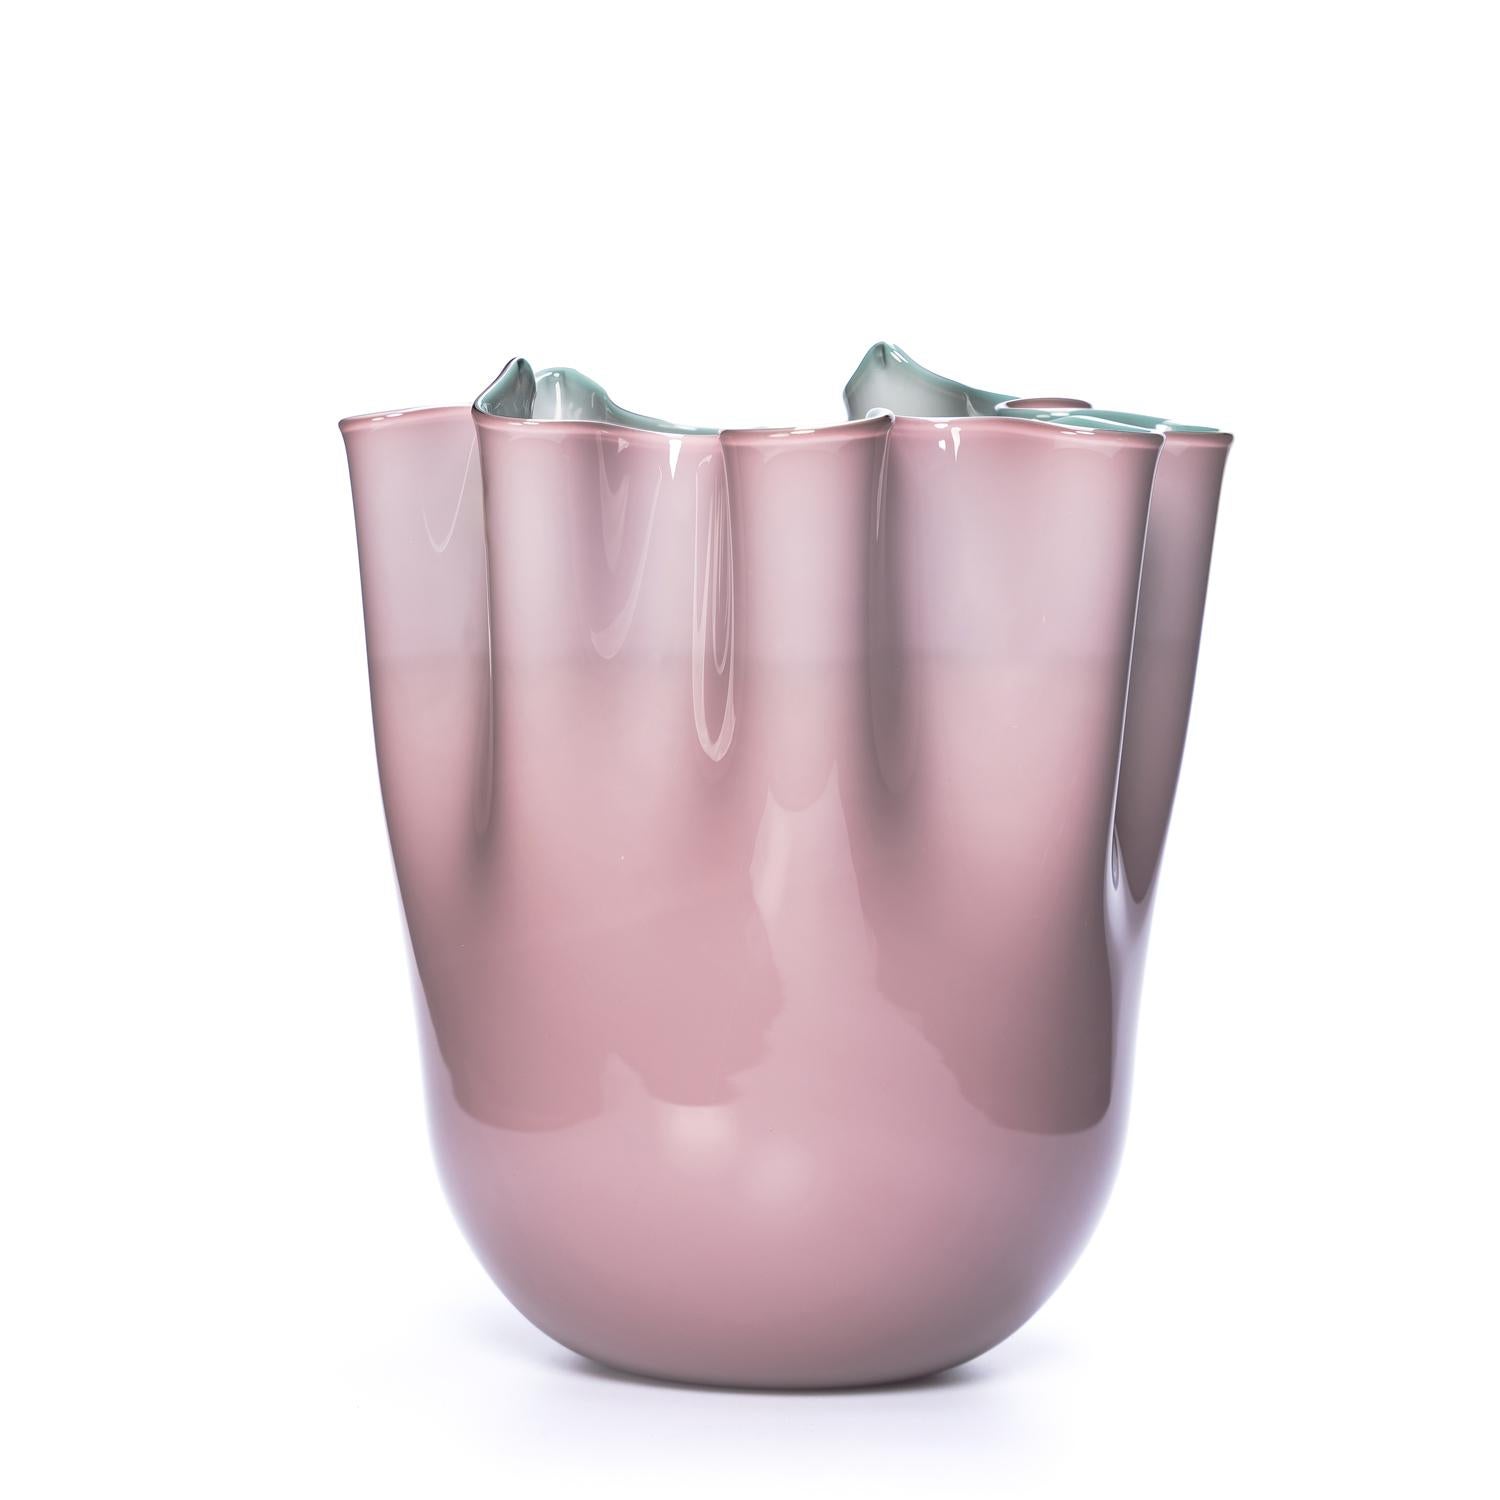 
Nous sommes ravis de vous présenter notre dernière création - un trio de vases d'art en verre de Murano, chacun doté d'un charme unique. Notre objectif est d'évoquer des émotions à travers notre art, et nous sommes fiers de présenter ces vases